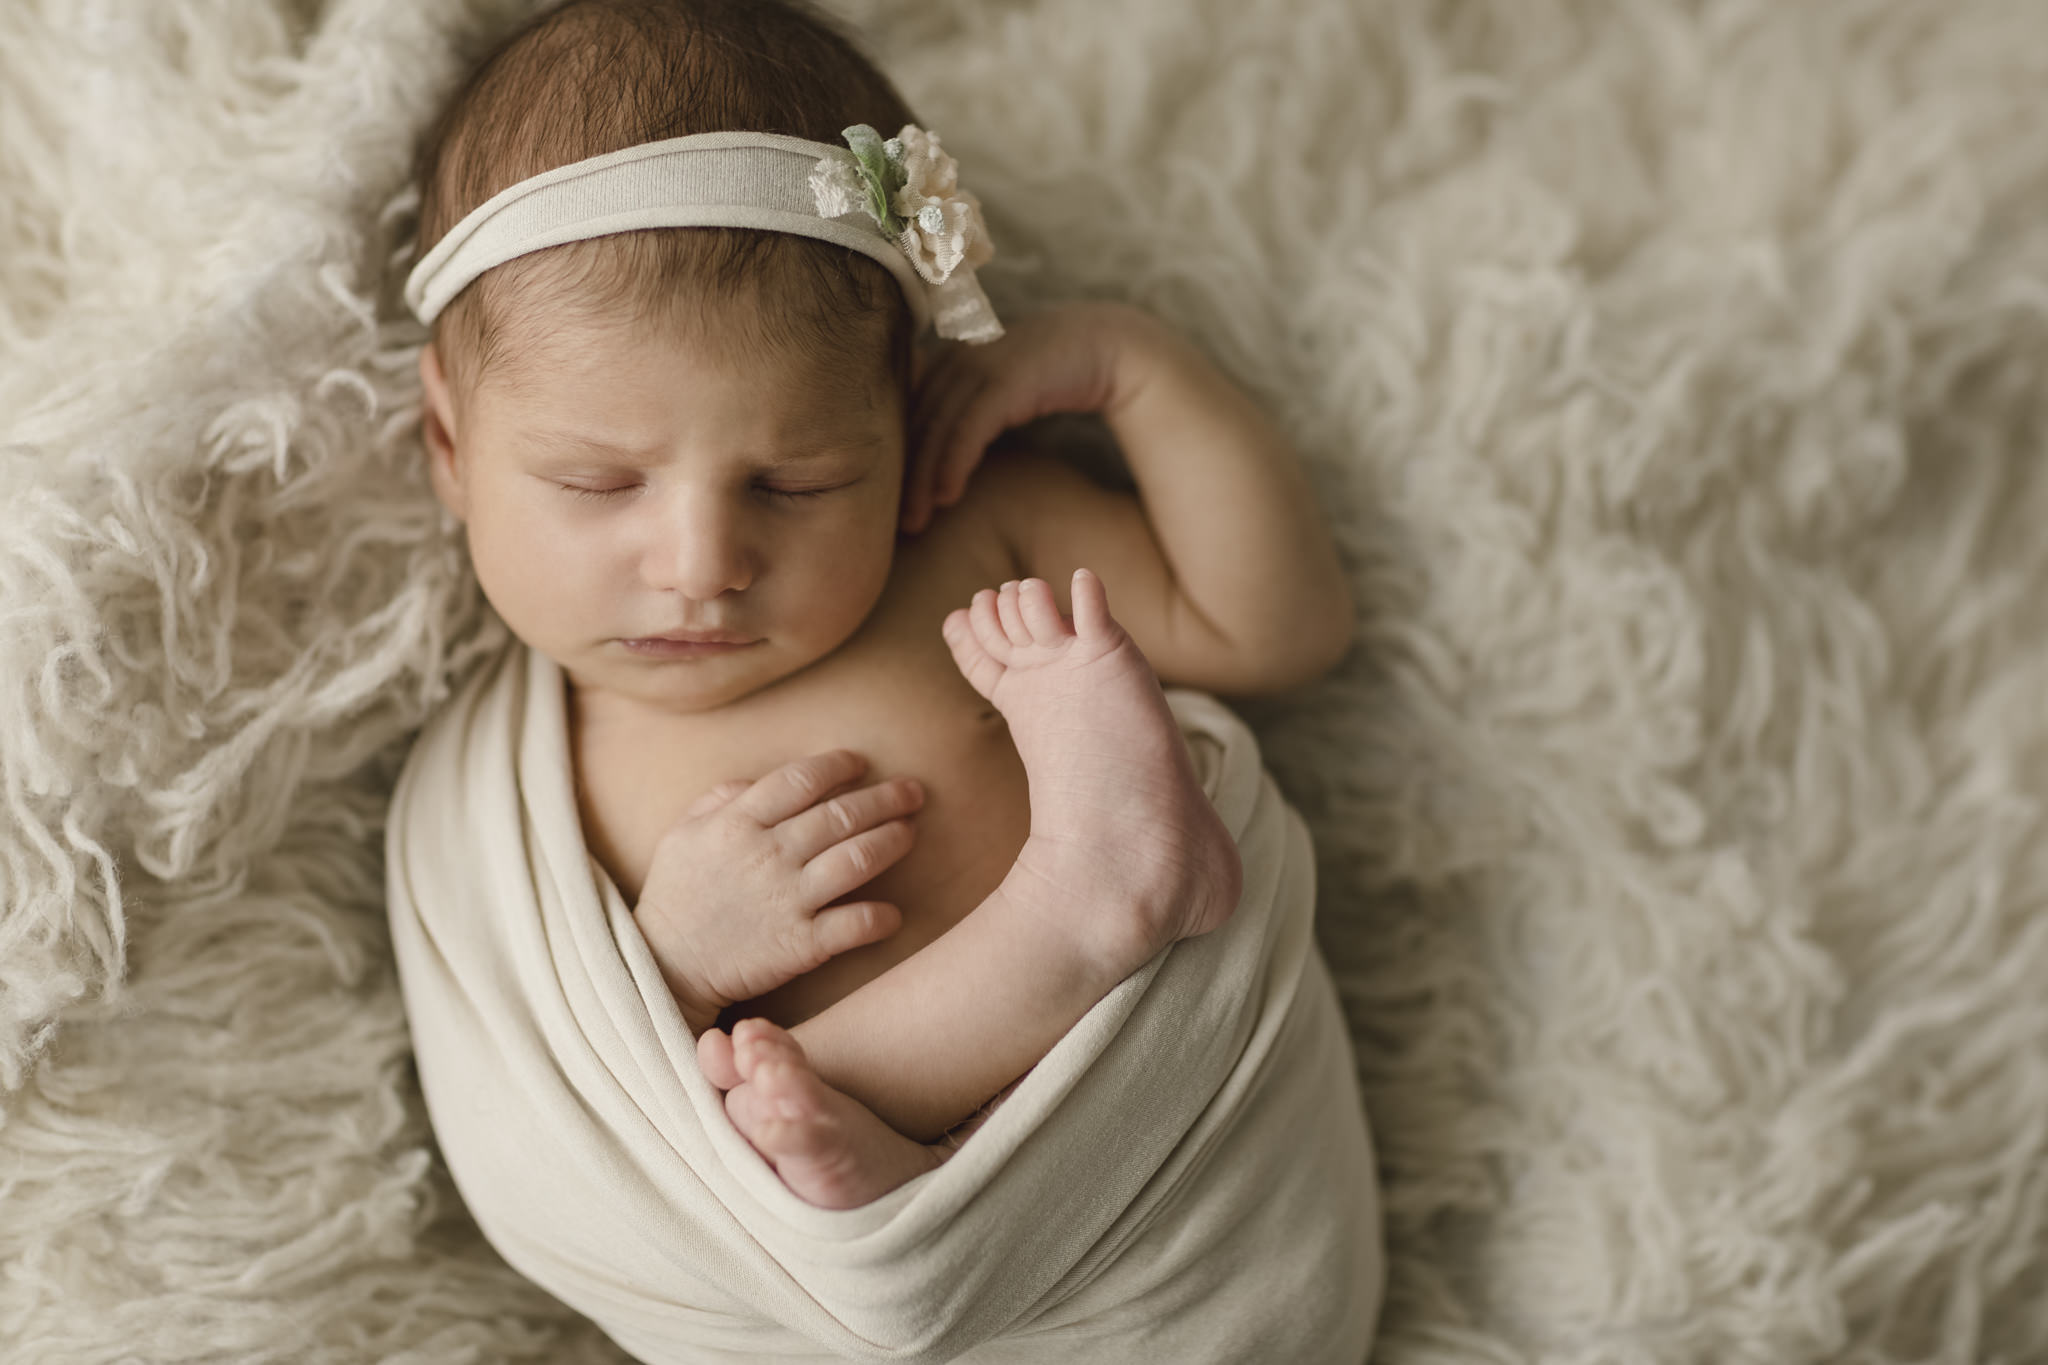 Newbornfotografie Workshop - Baby liegt eingewickelt auf einem kuscheligen Fell